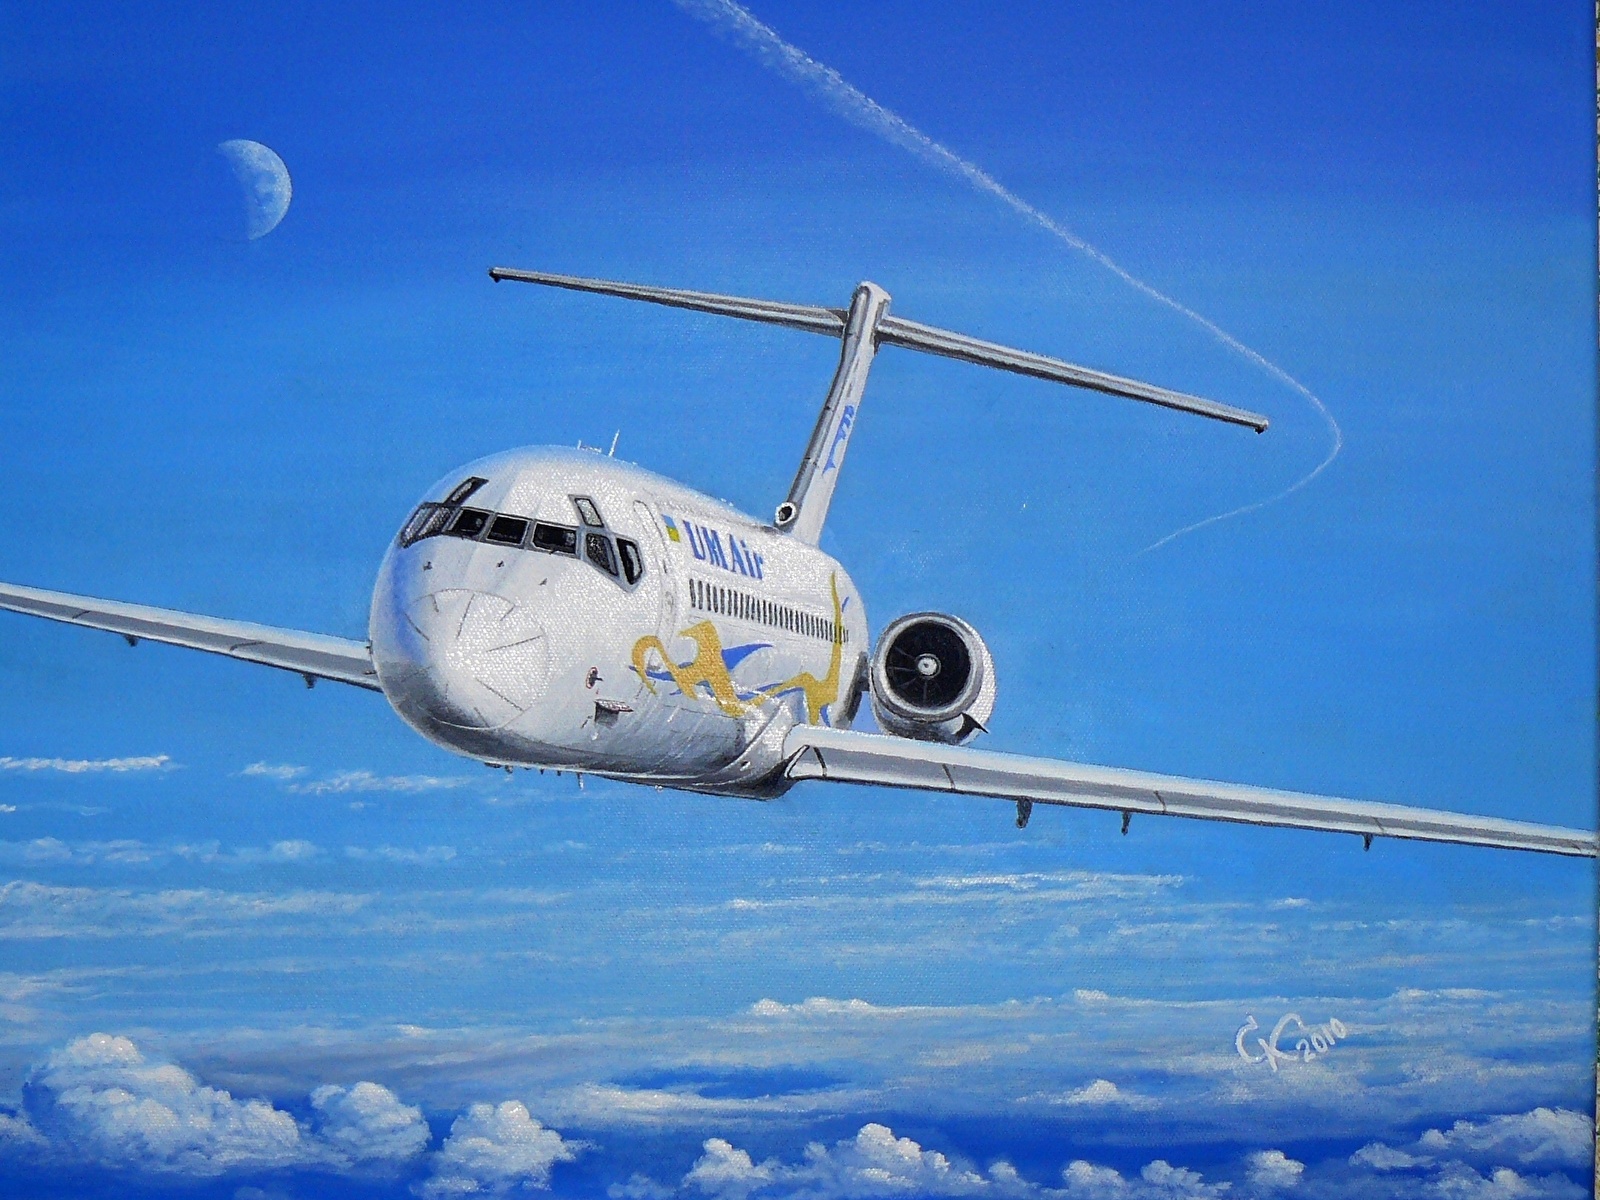 壁紙 1600x10 描かれた壁紙 飛行機 旅客機 Dc 9 航空 ダウンロード 写真